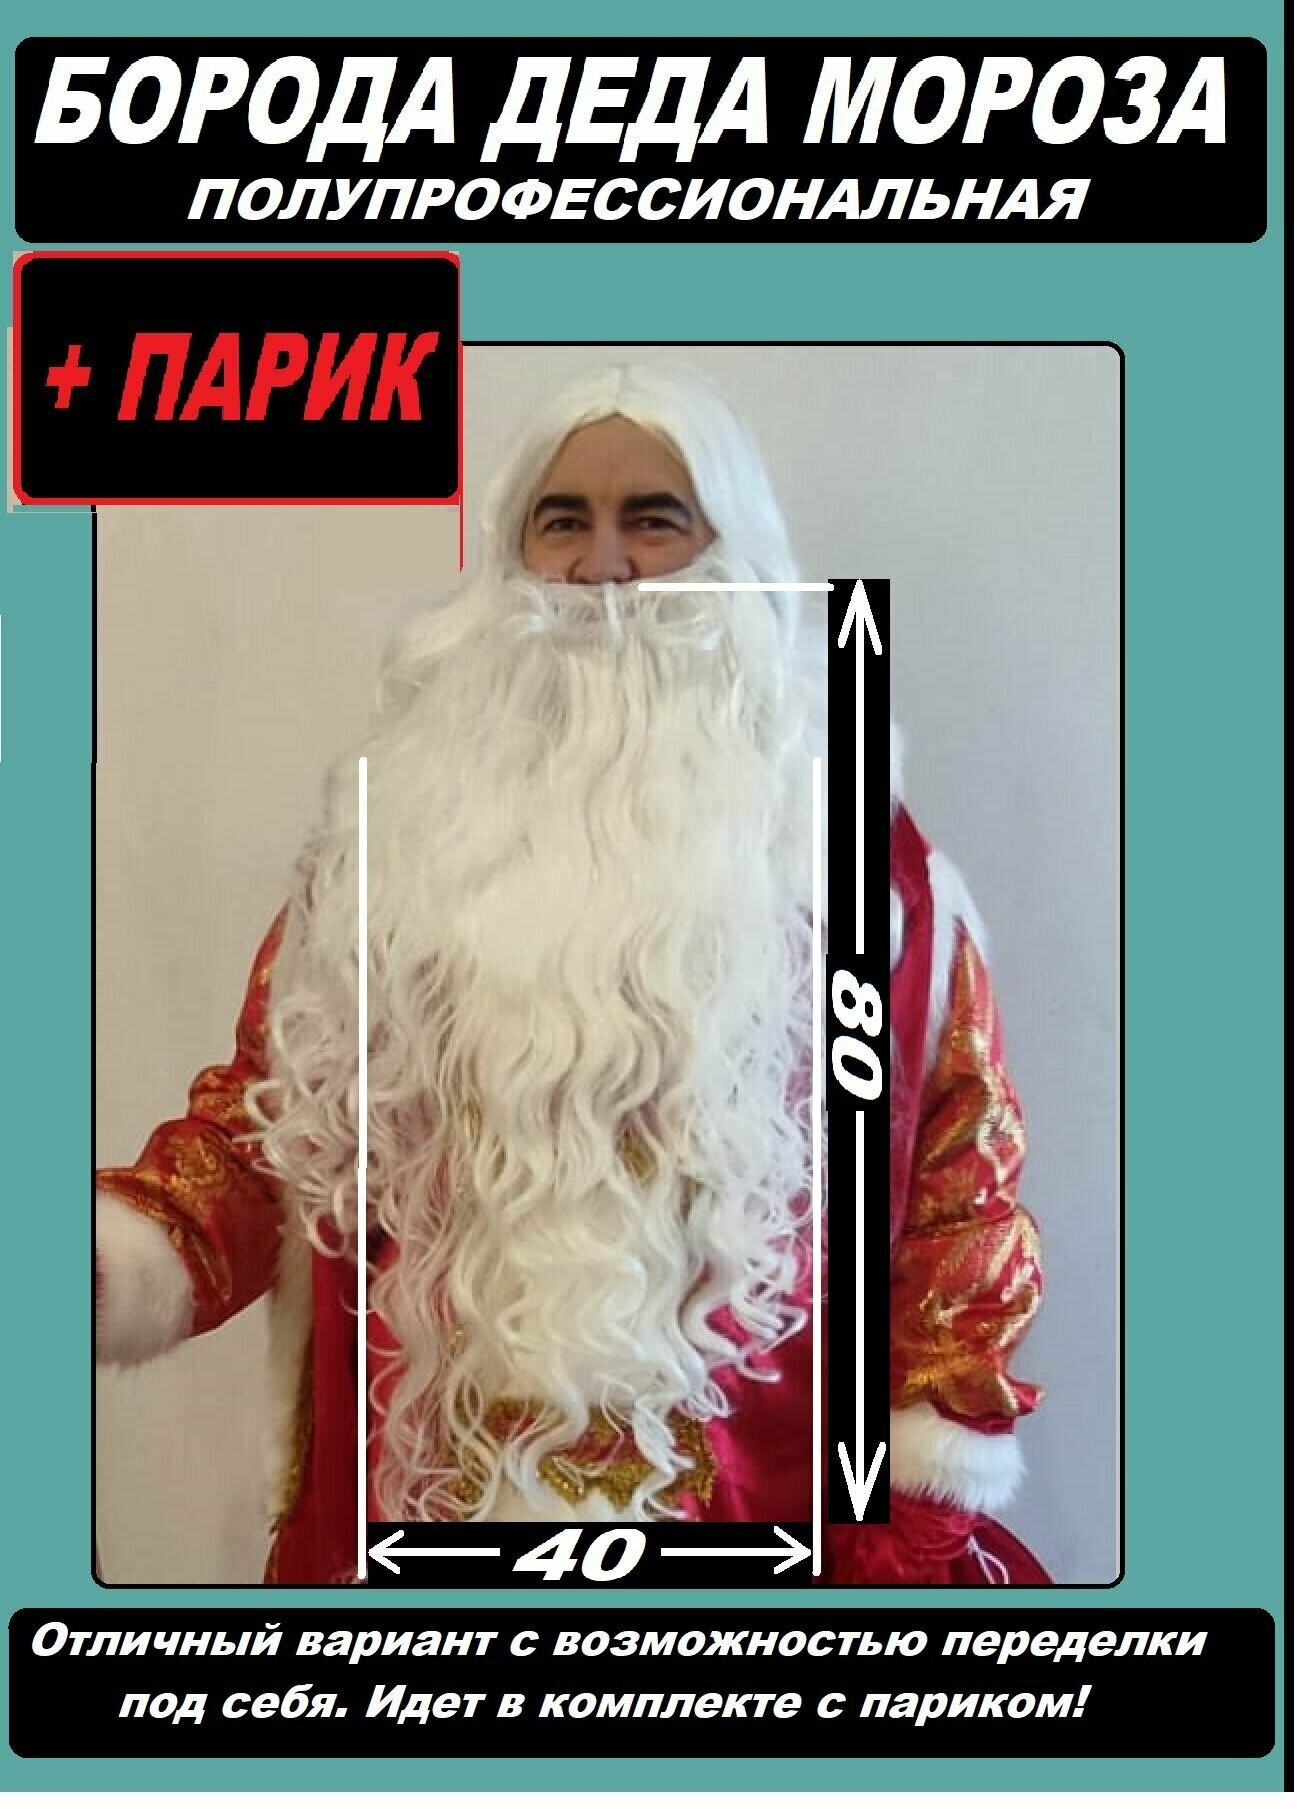 Борода Деда Мороза в наборе с париком полупрофессиональный вариант с возможностью переделки под себя